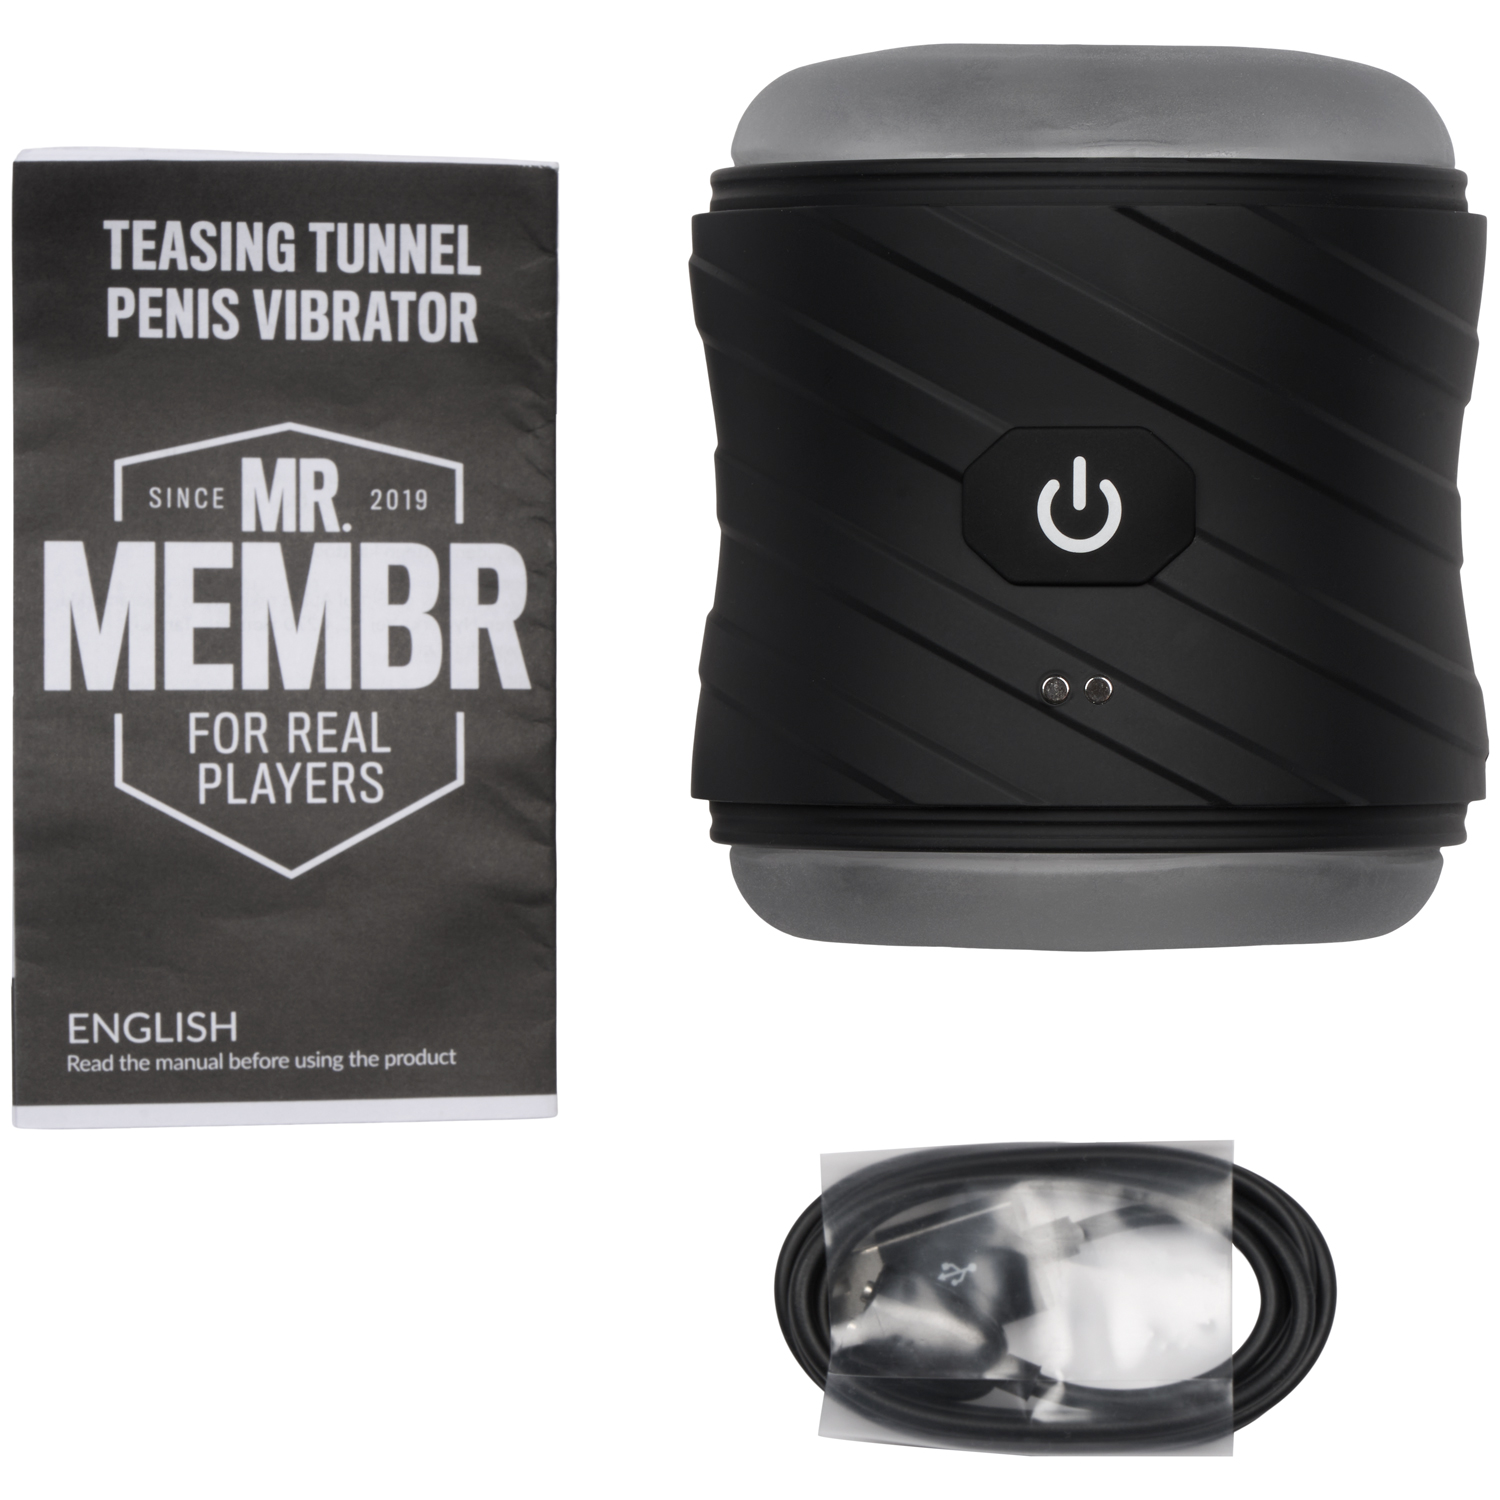 Mr. Membr MR.MEMBR Teasing Tunnel Penis Vibrator     - Sort thumbnail